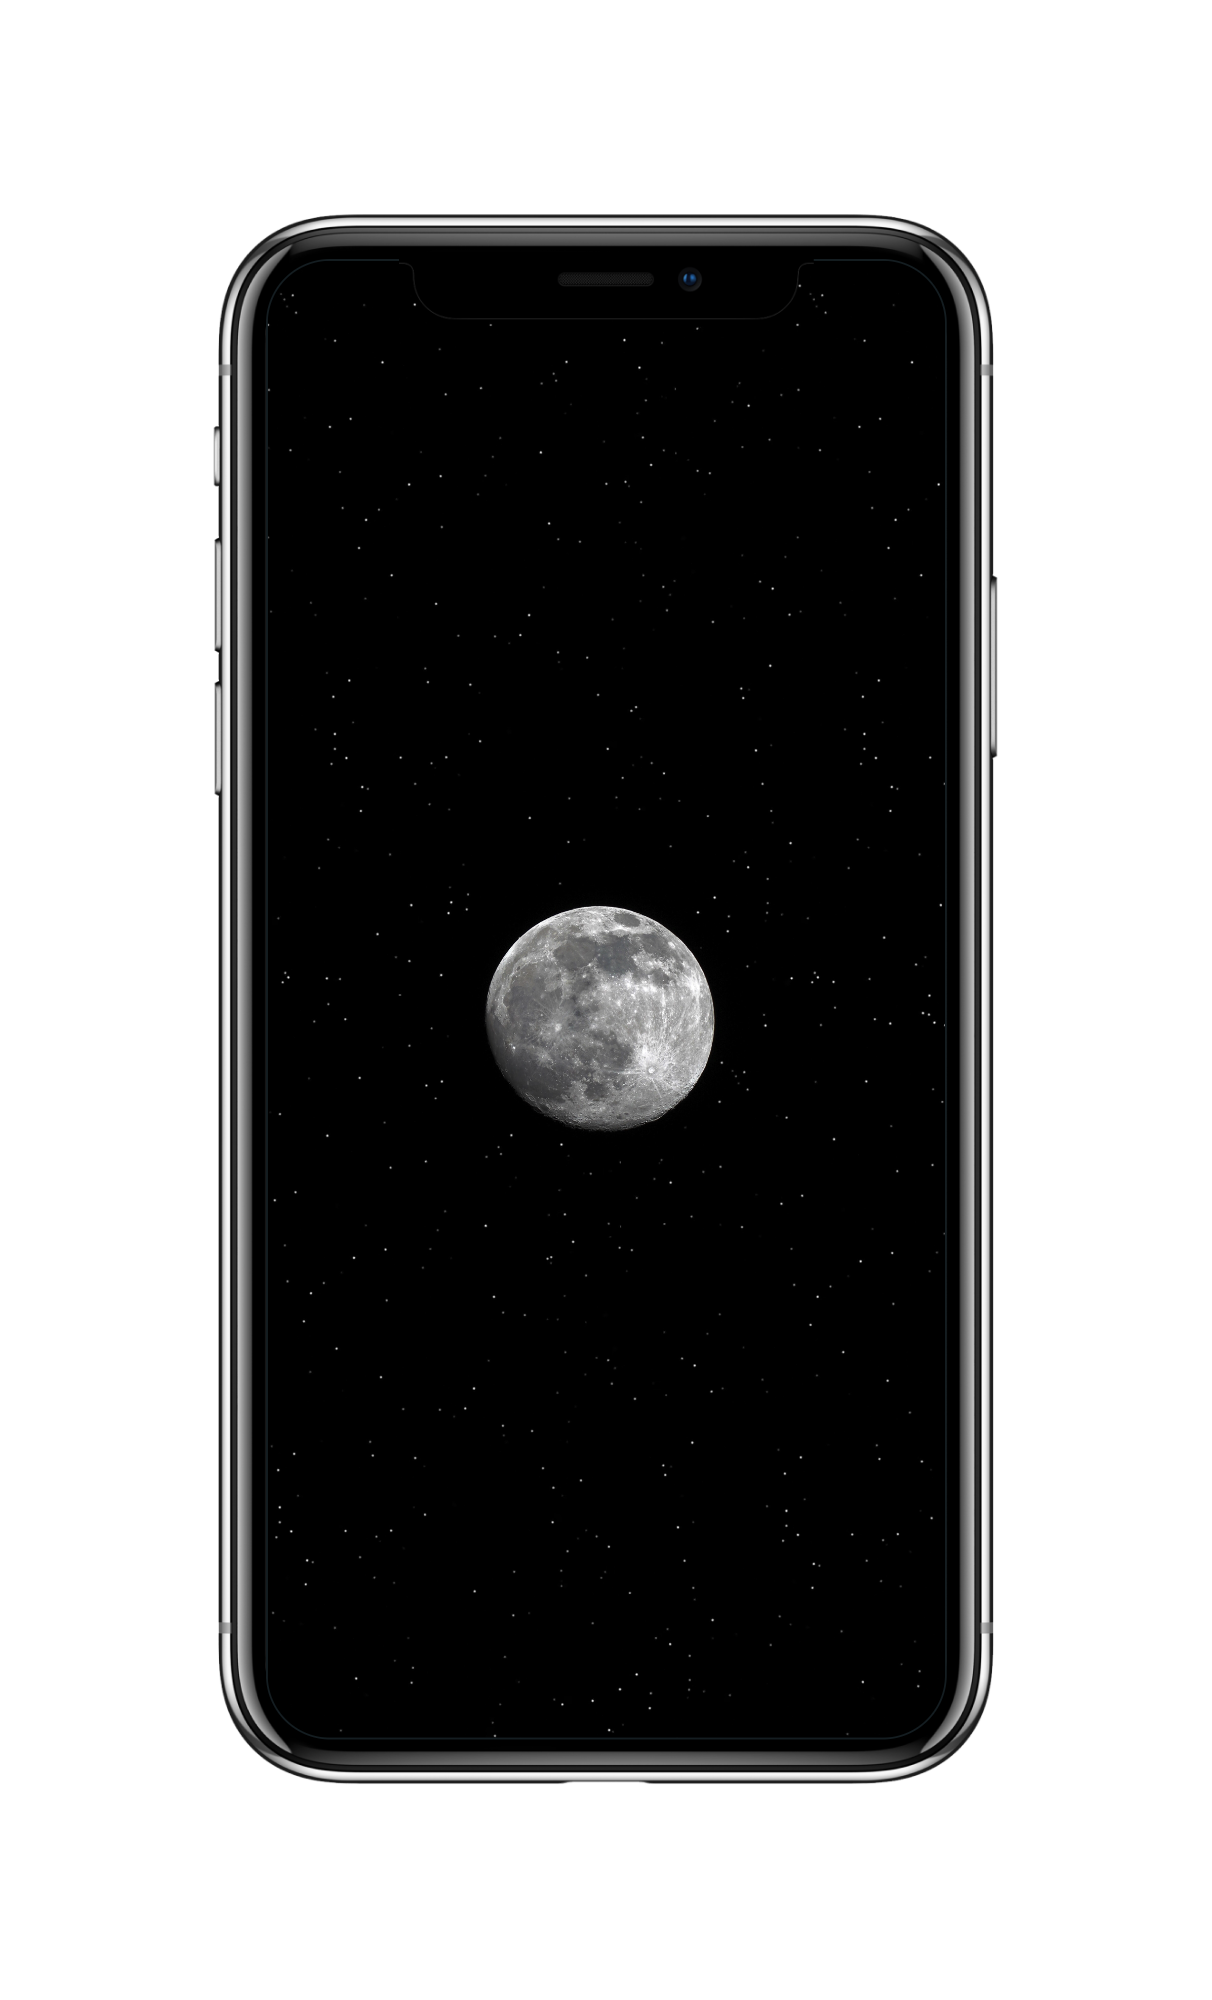 黑白 星空 月球 超清4K手机壁纸 适合amoled屏幕